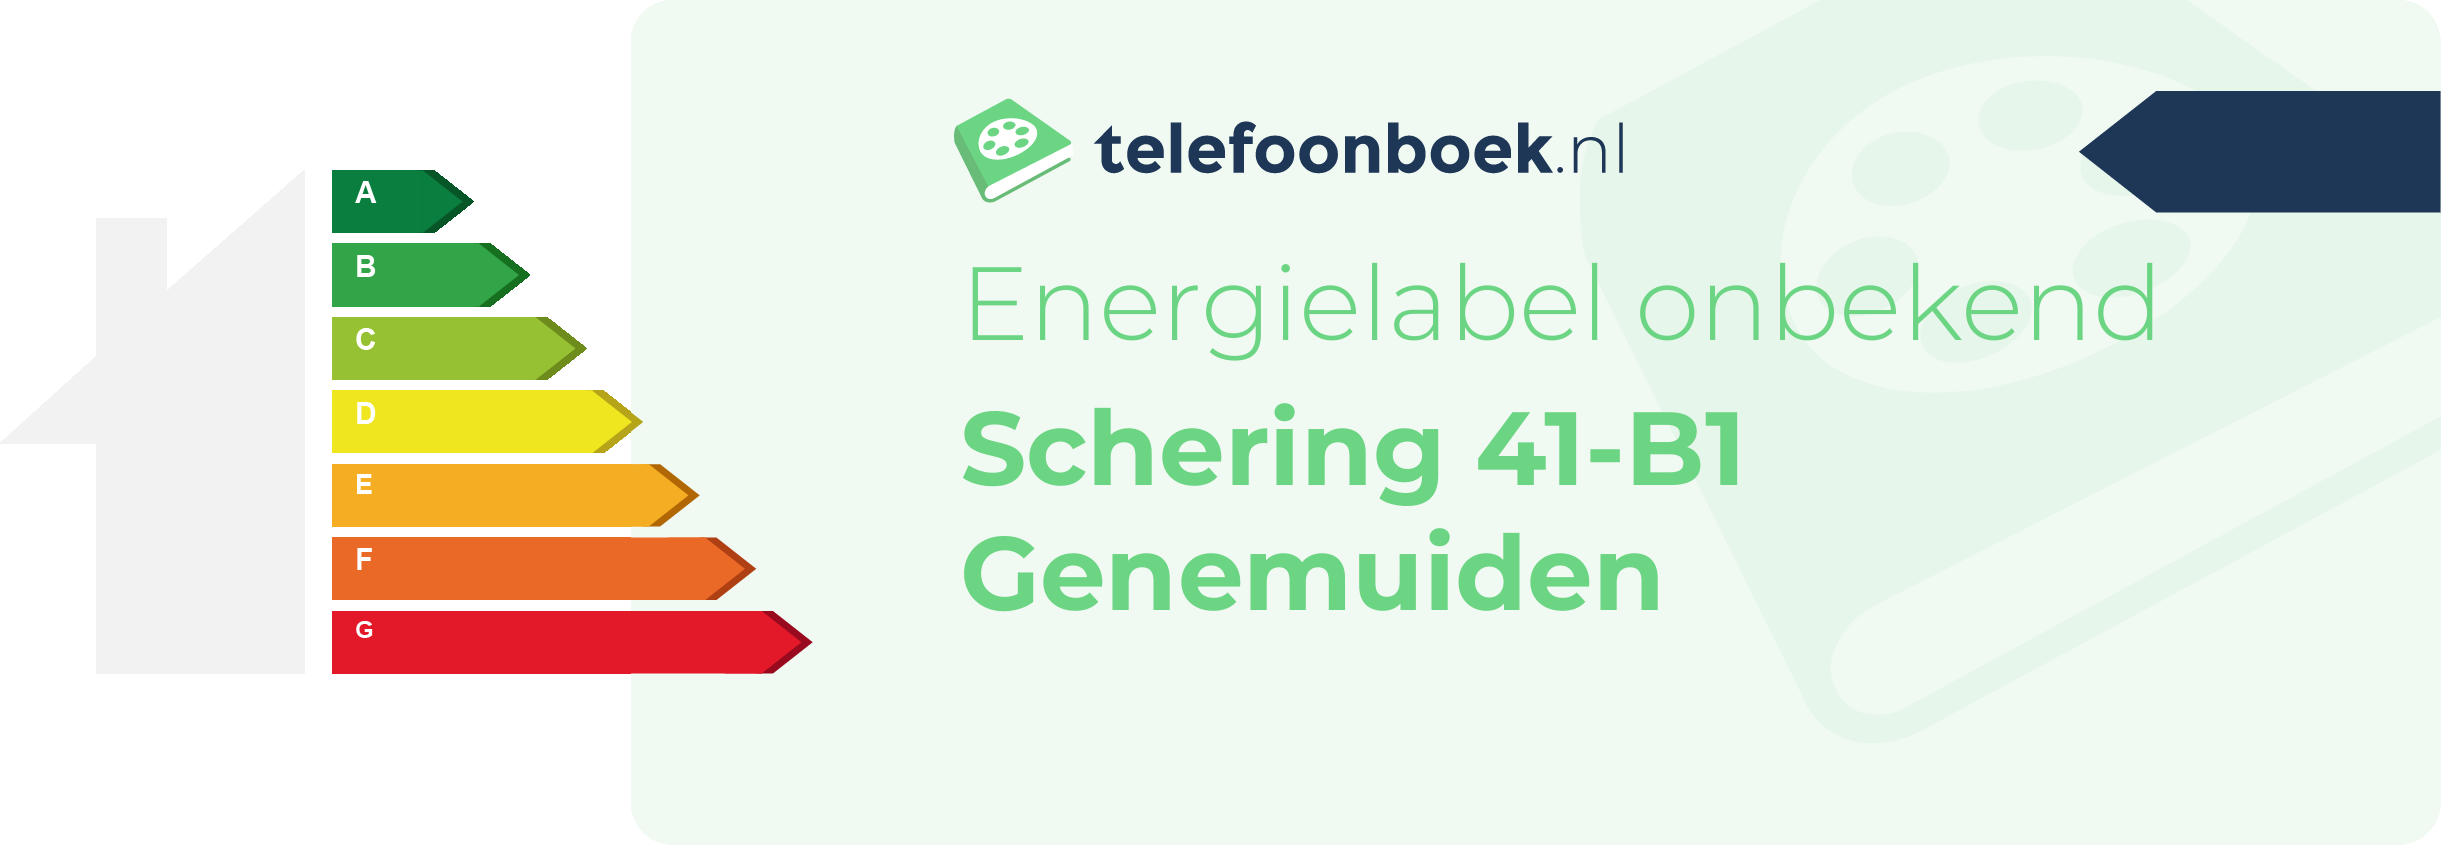 Energielabel Schering 41-B1 Genemuiden